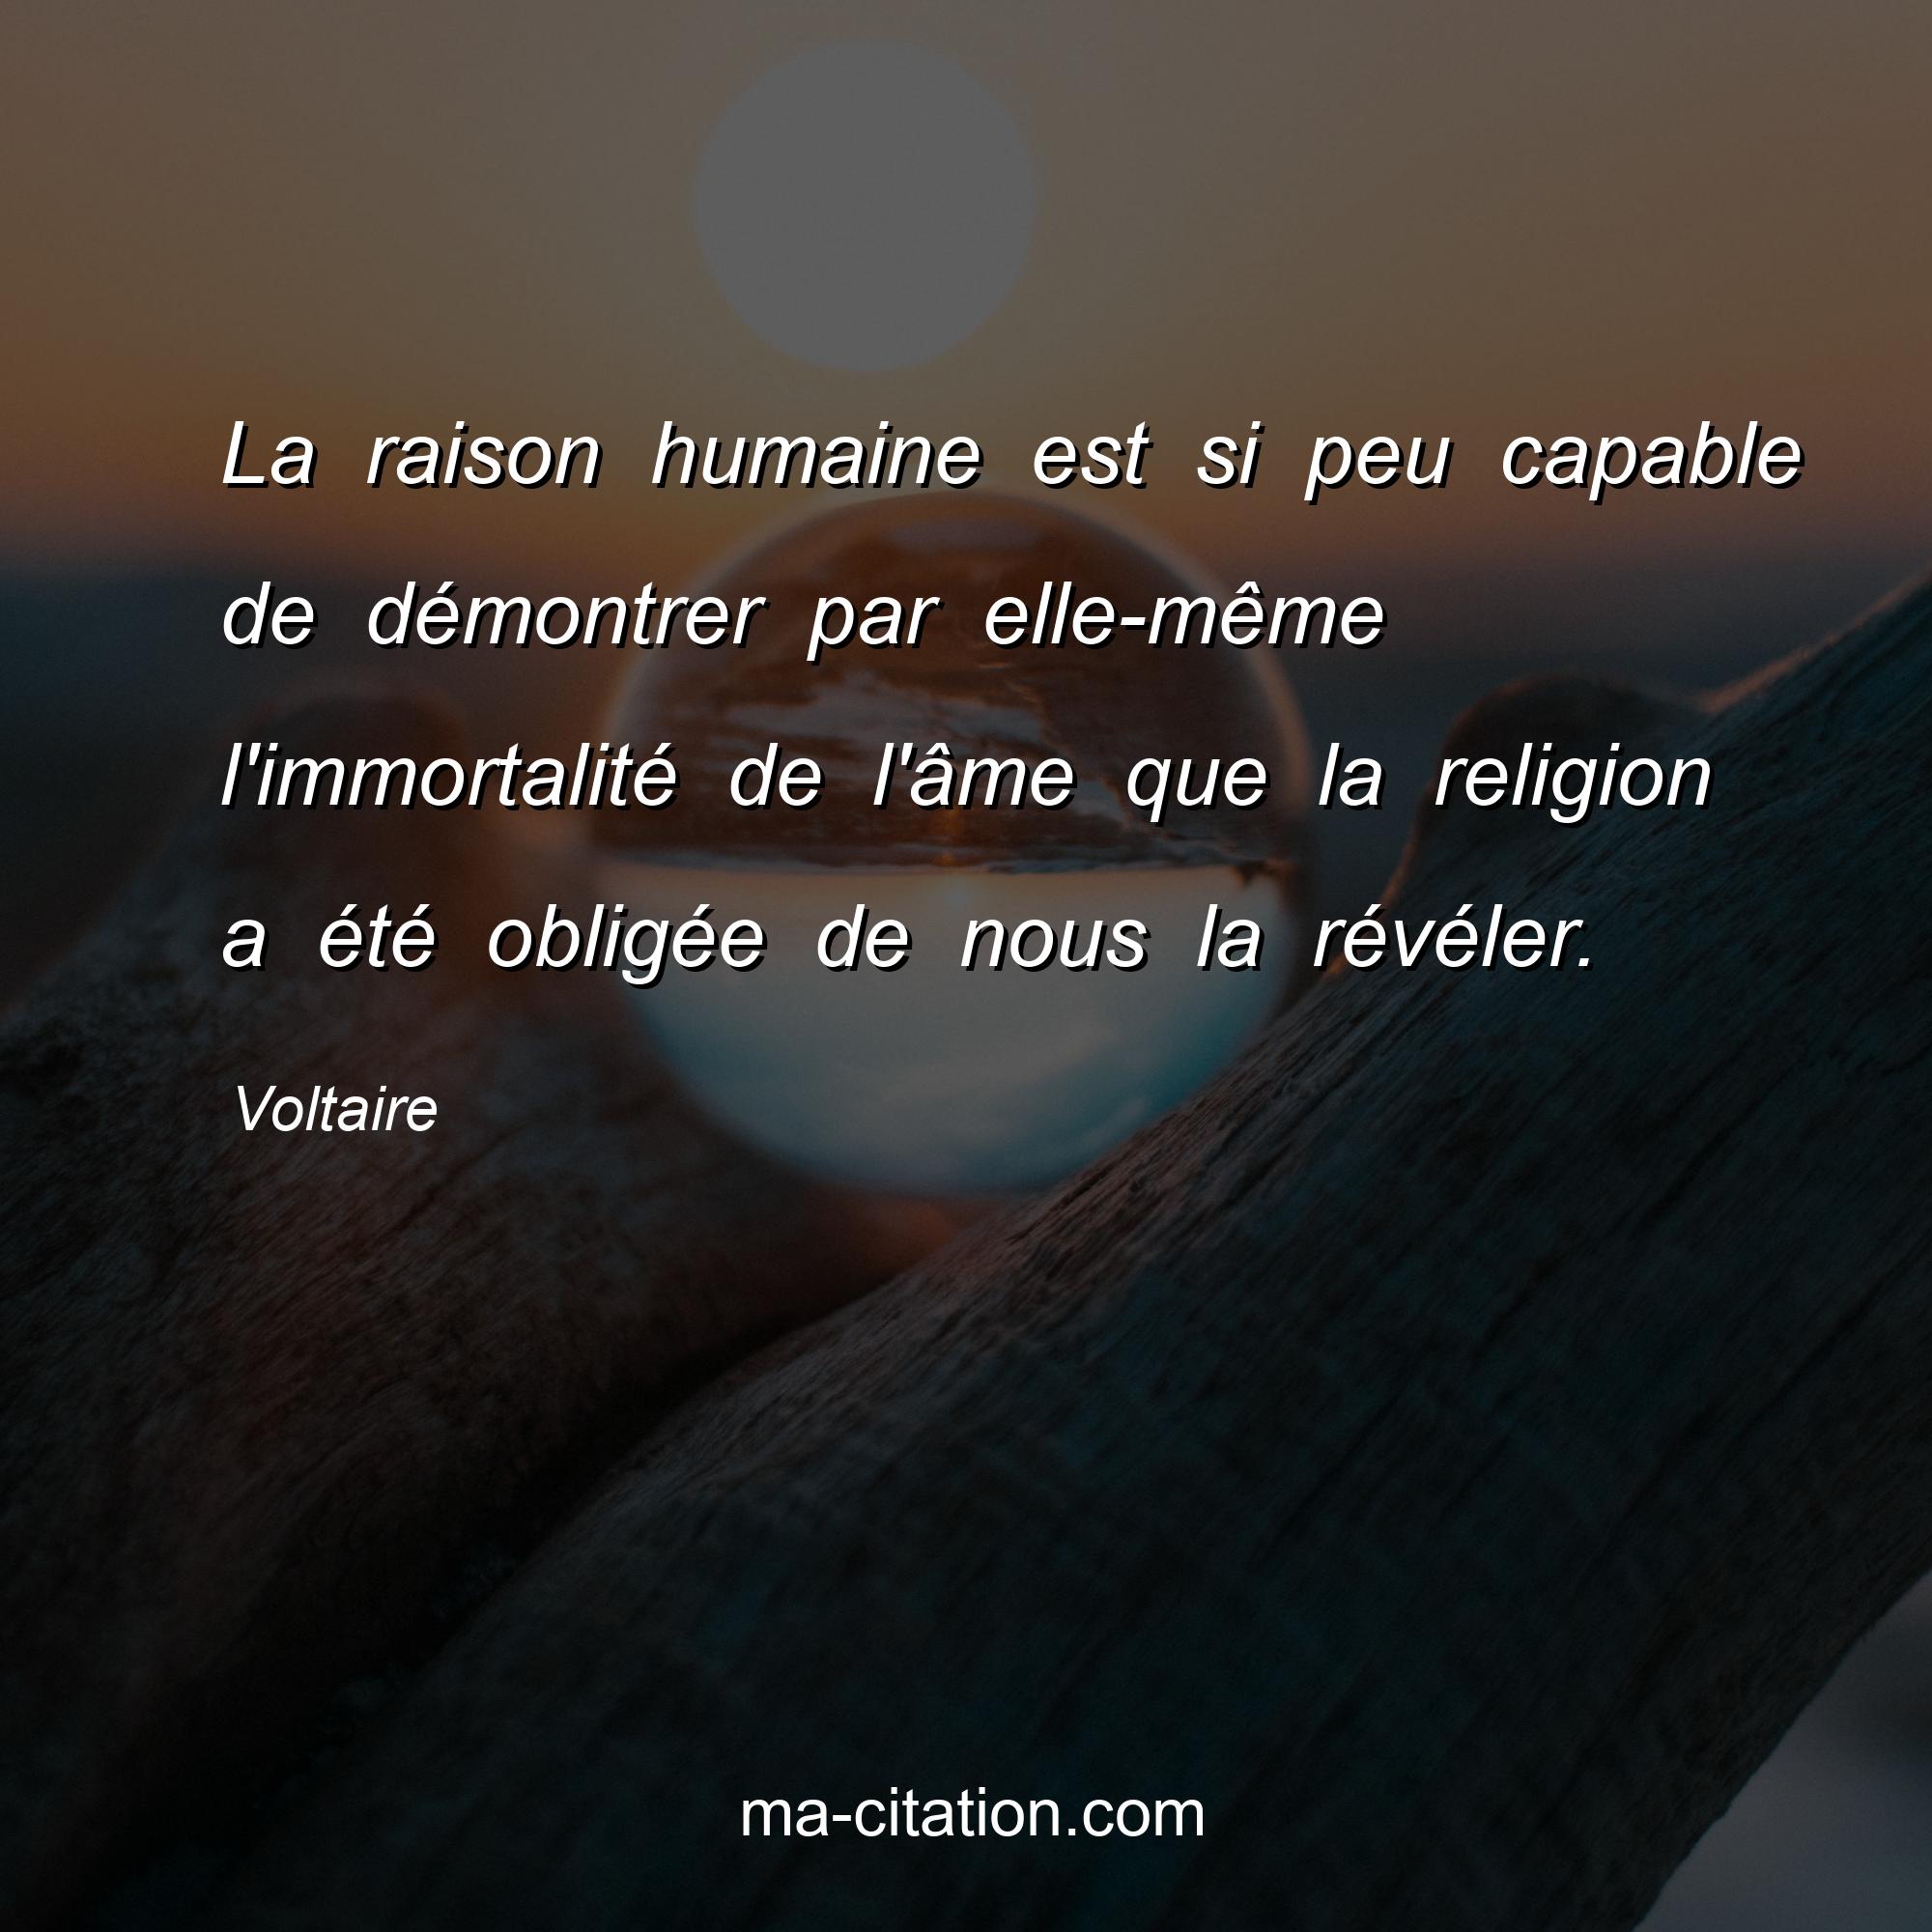 Voltaire : La raison humaine est si peu capable de démontrer par elle-même l'immortalité de l'âme que la religion a été obligée de nous la révéler.